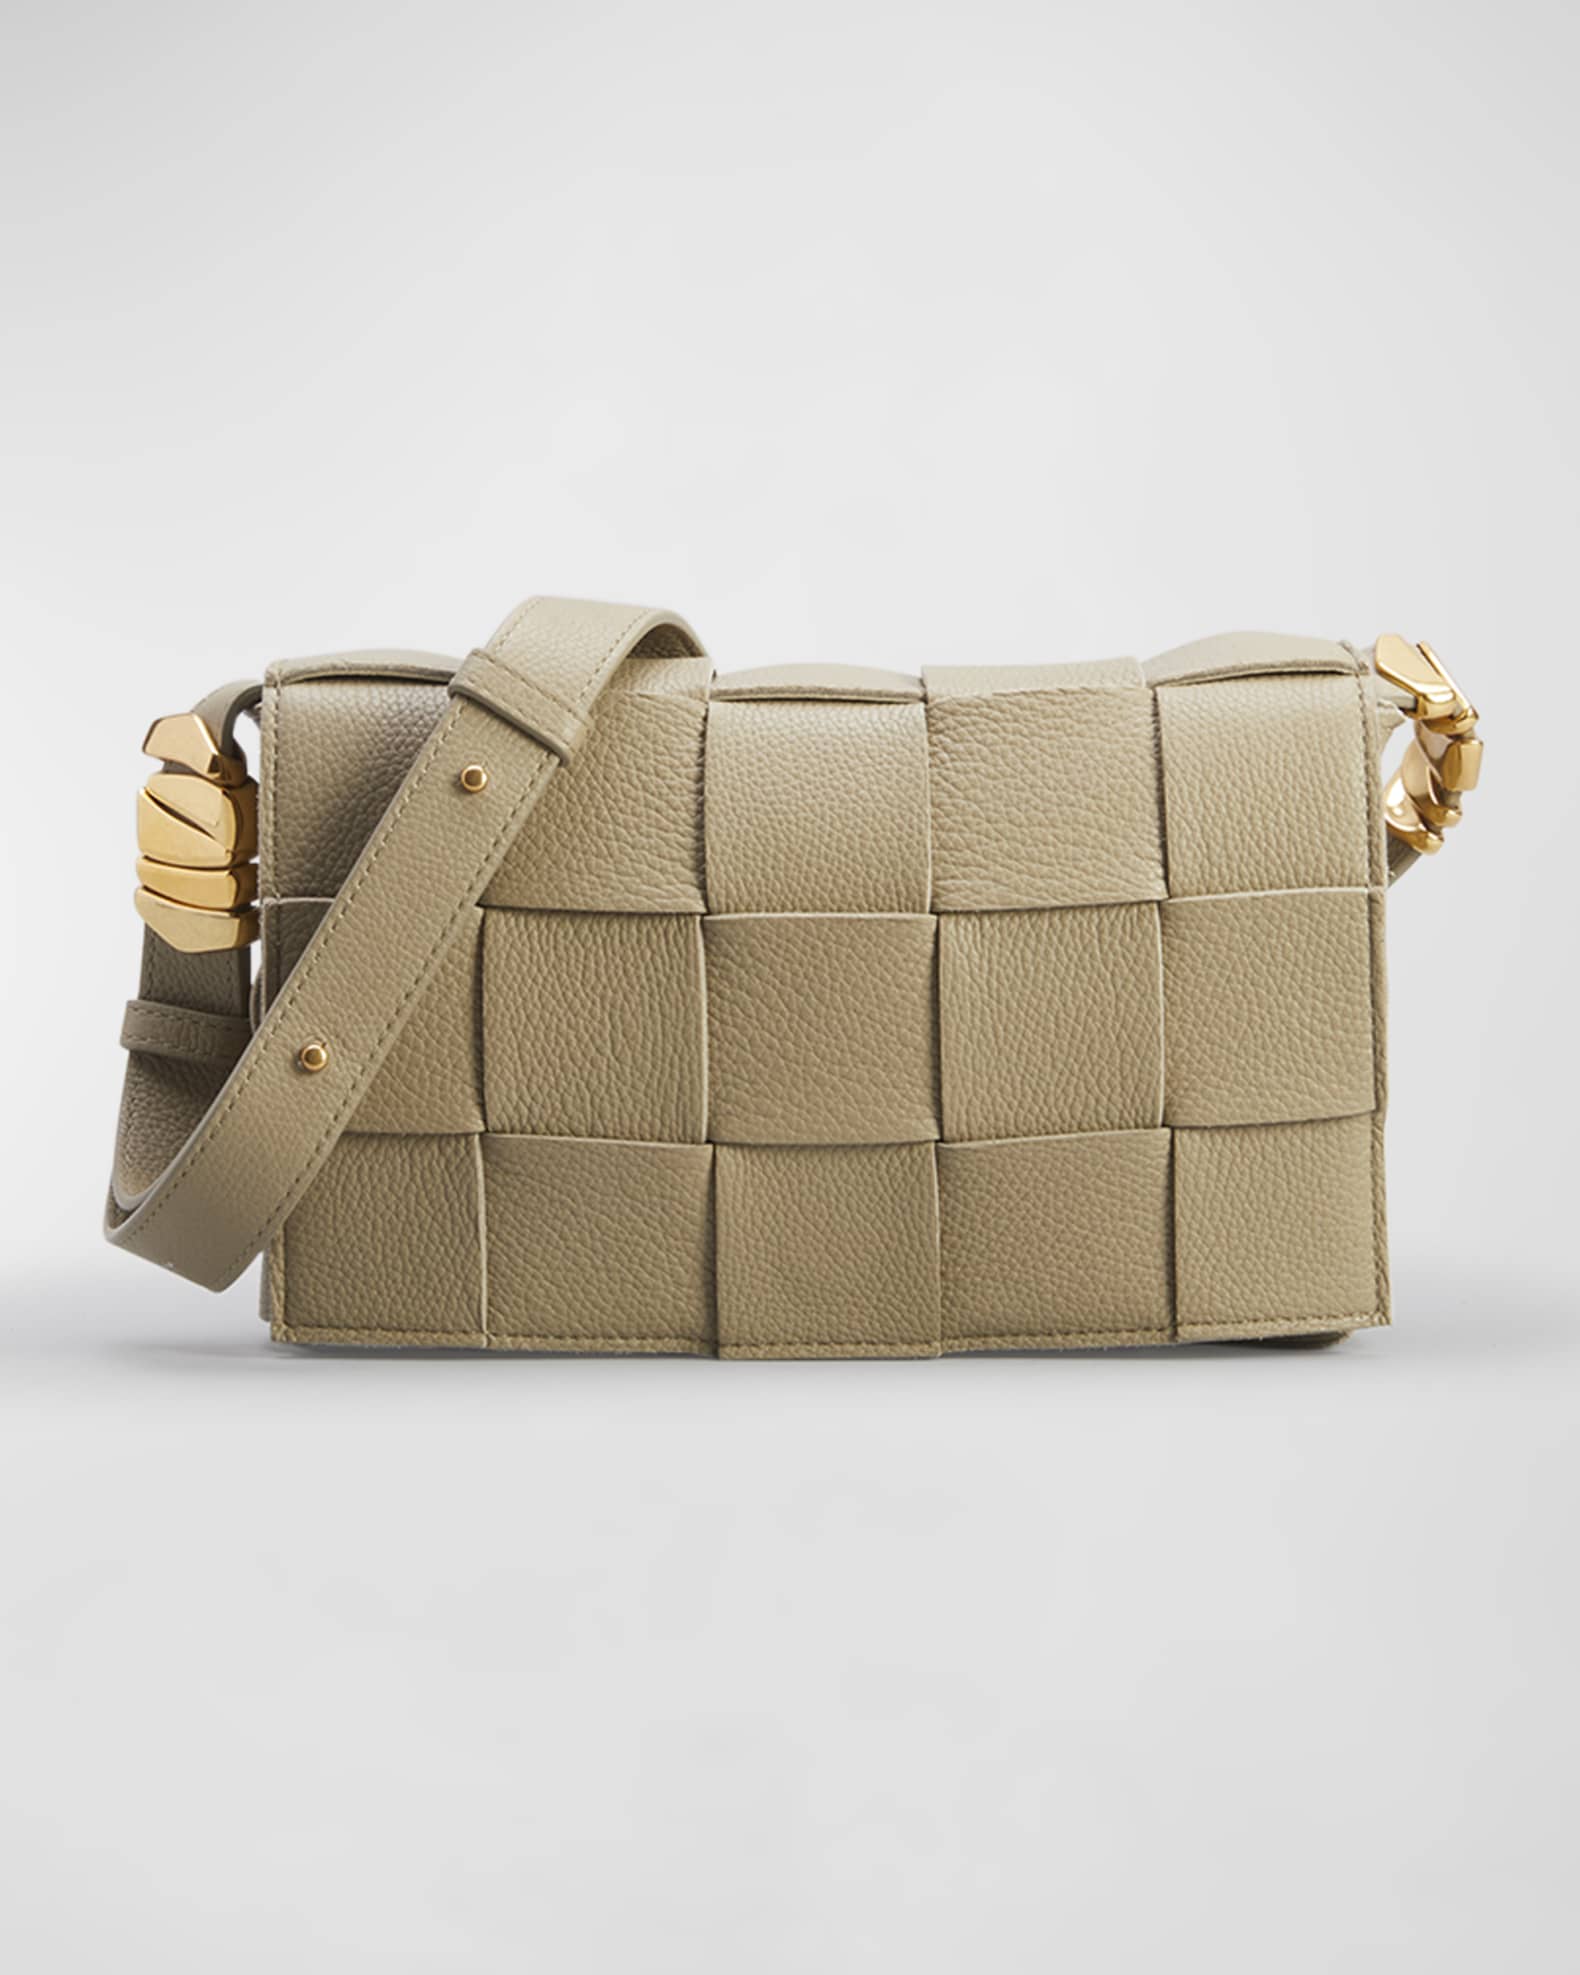 Bottega Veneta Women's Grainy Cassette Leather Shoulder Bag Avocado Gold